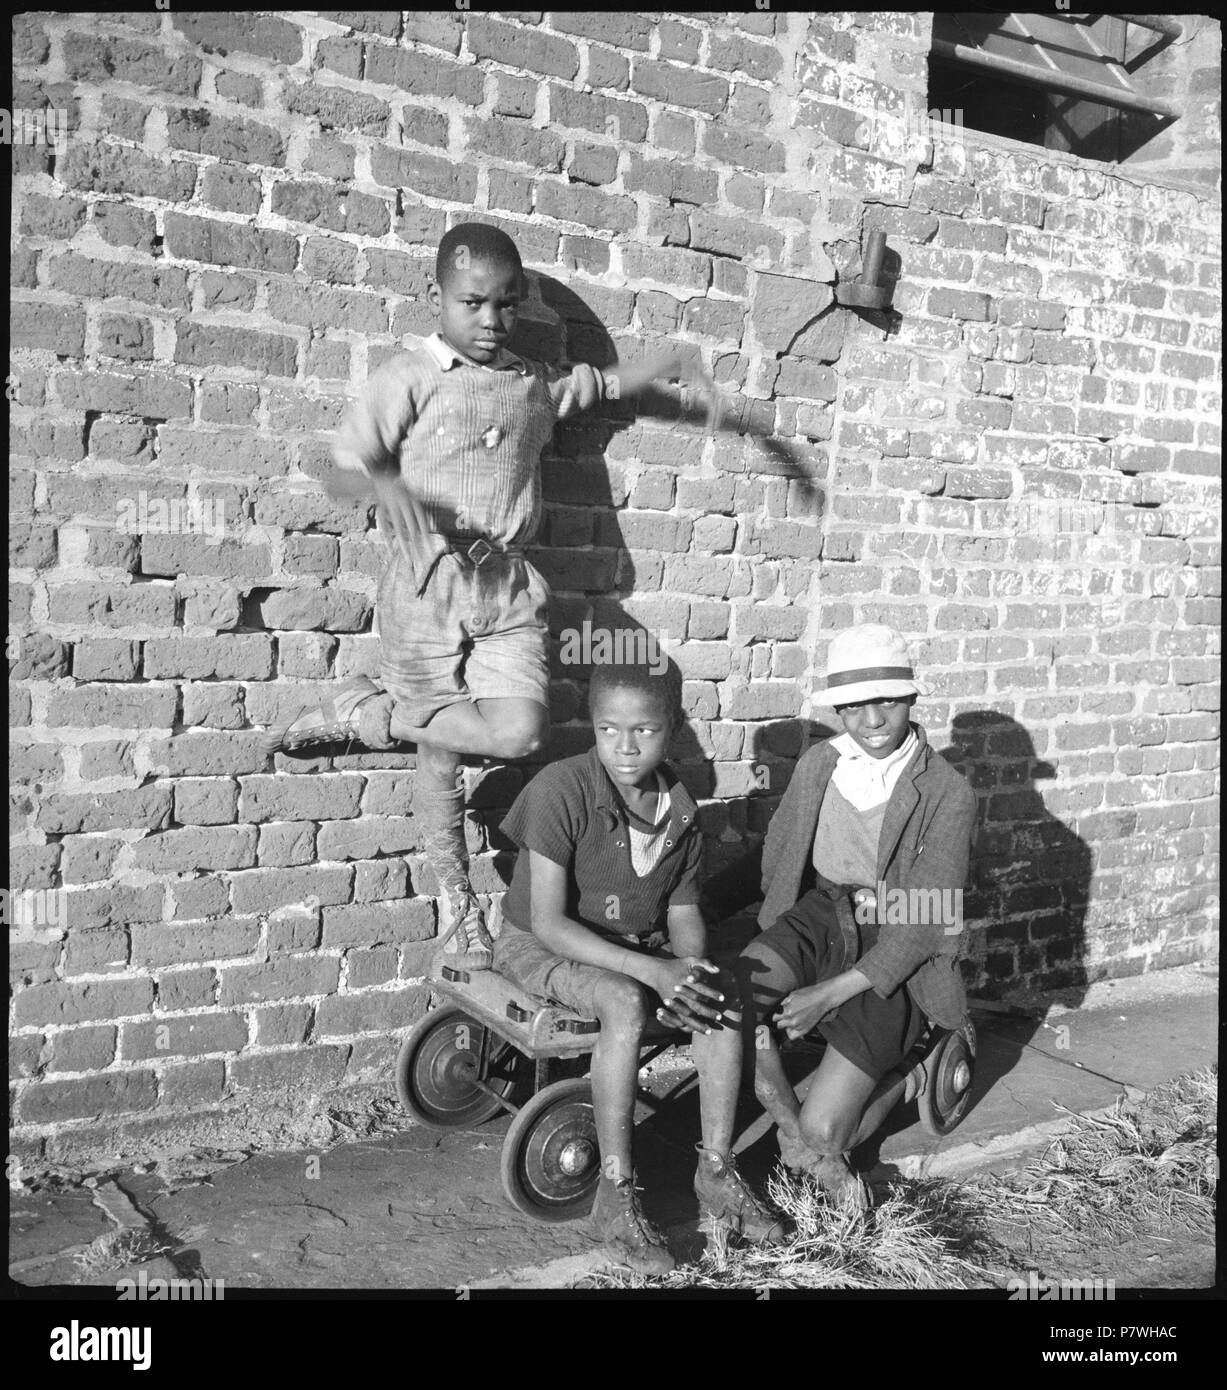 Stati Uniti d'America, Charleston/SC: Menschen; Drei Jungen vor einer Backsteinmauer. Dal 1936 fino al 1938 85 CH-NB - USA, Charleston-SC- Menschen - Annemarie Schwarzenbach - SLA-Schwarzenbach-UN-5-11-163 Foto Stock